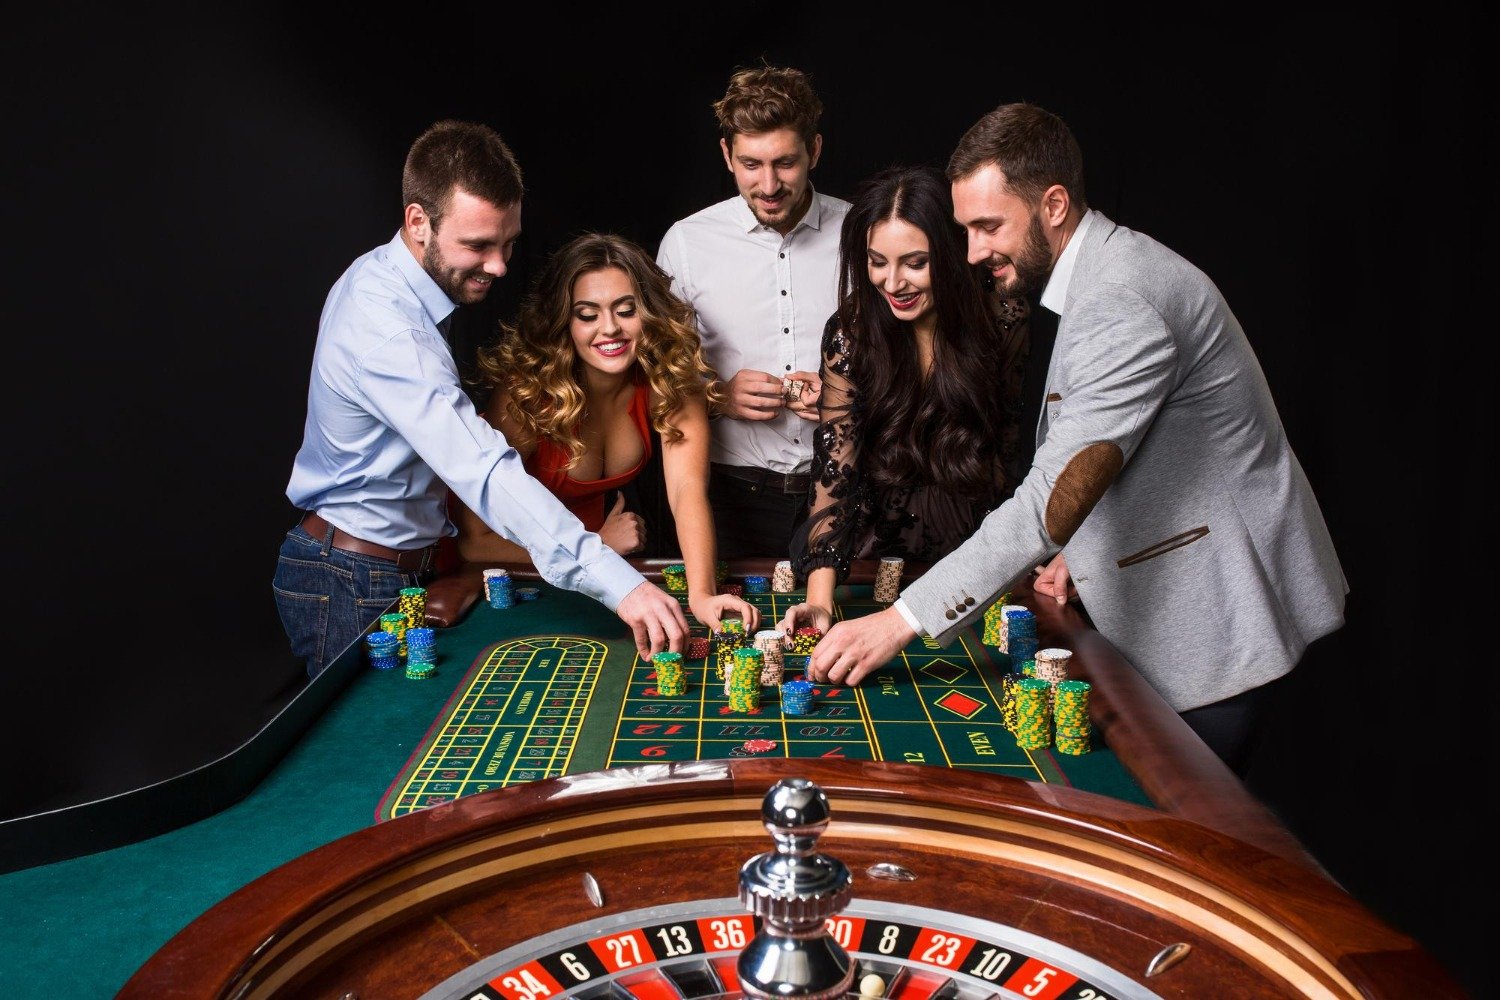 Se divertir em jogos de mesa de cassinos é o sonho de muitos. Com as apostas online, é possível ter essa realização com muita facilidade.